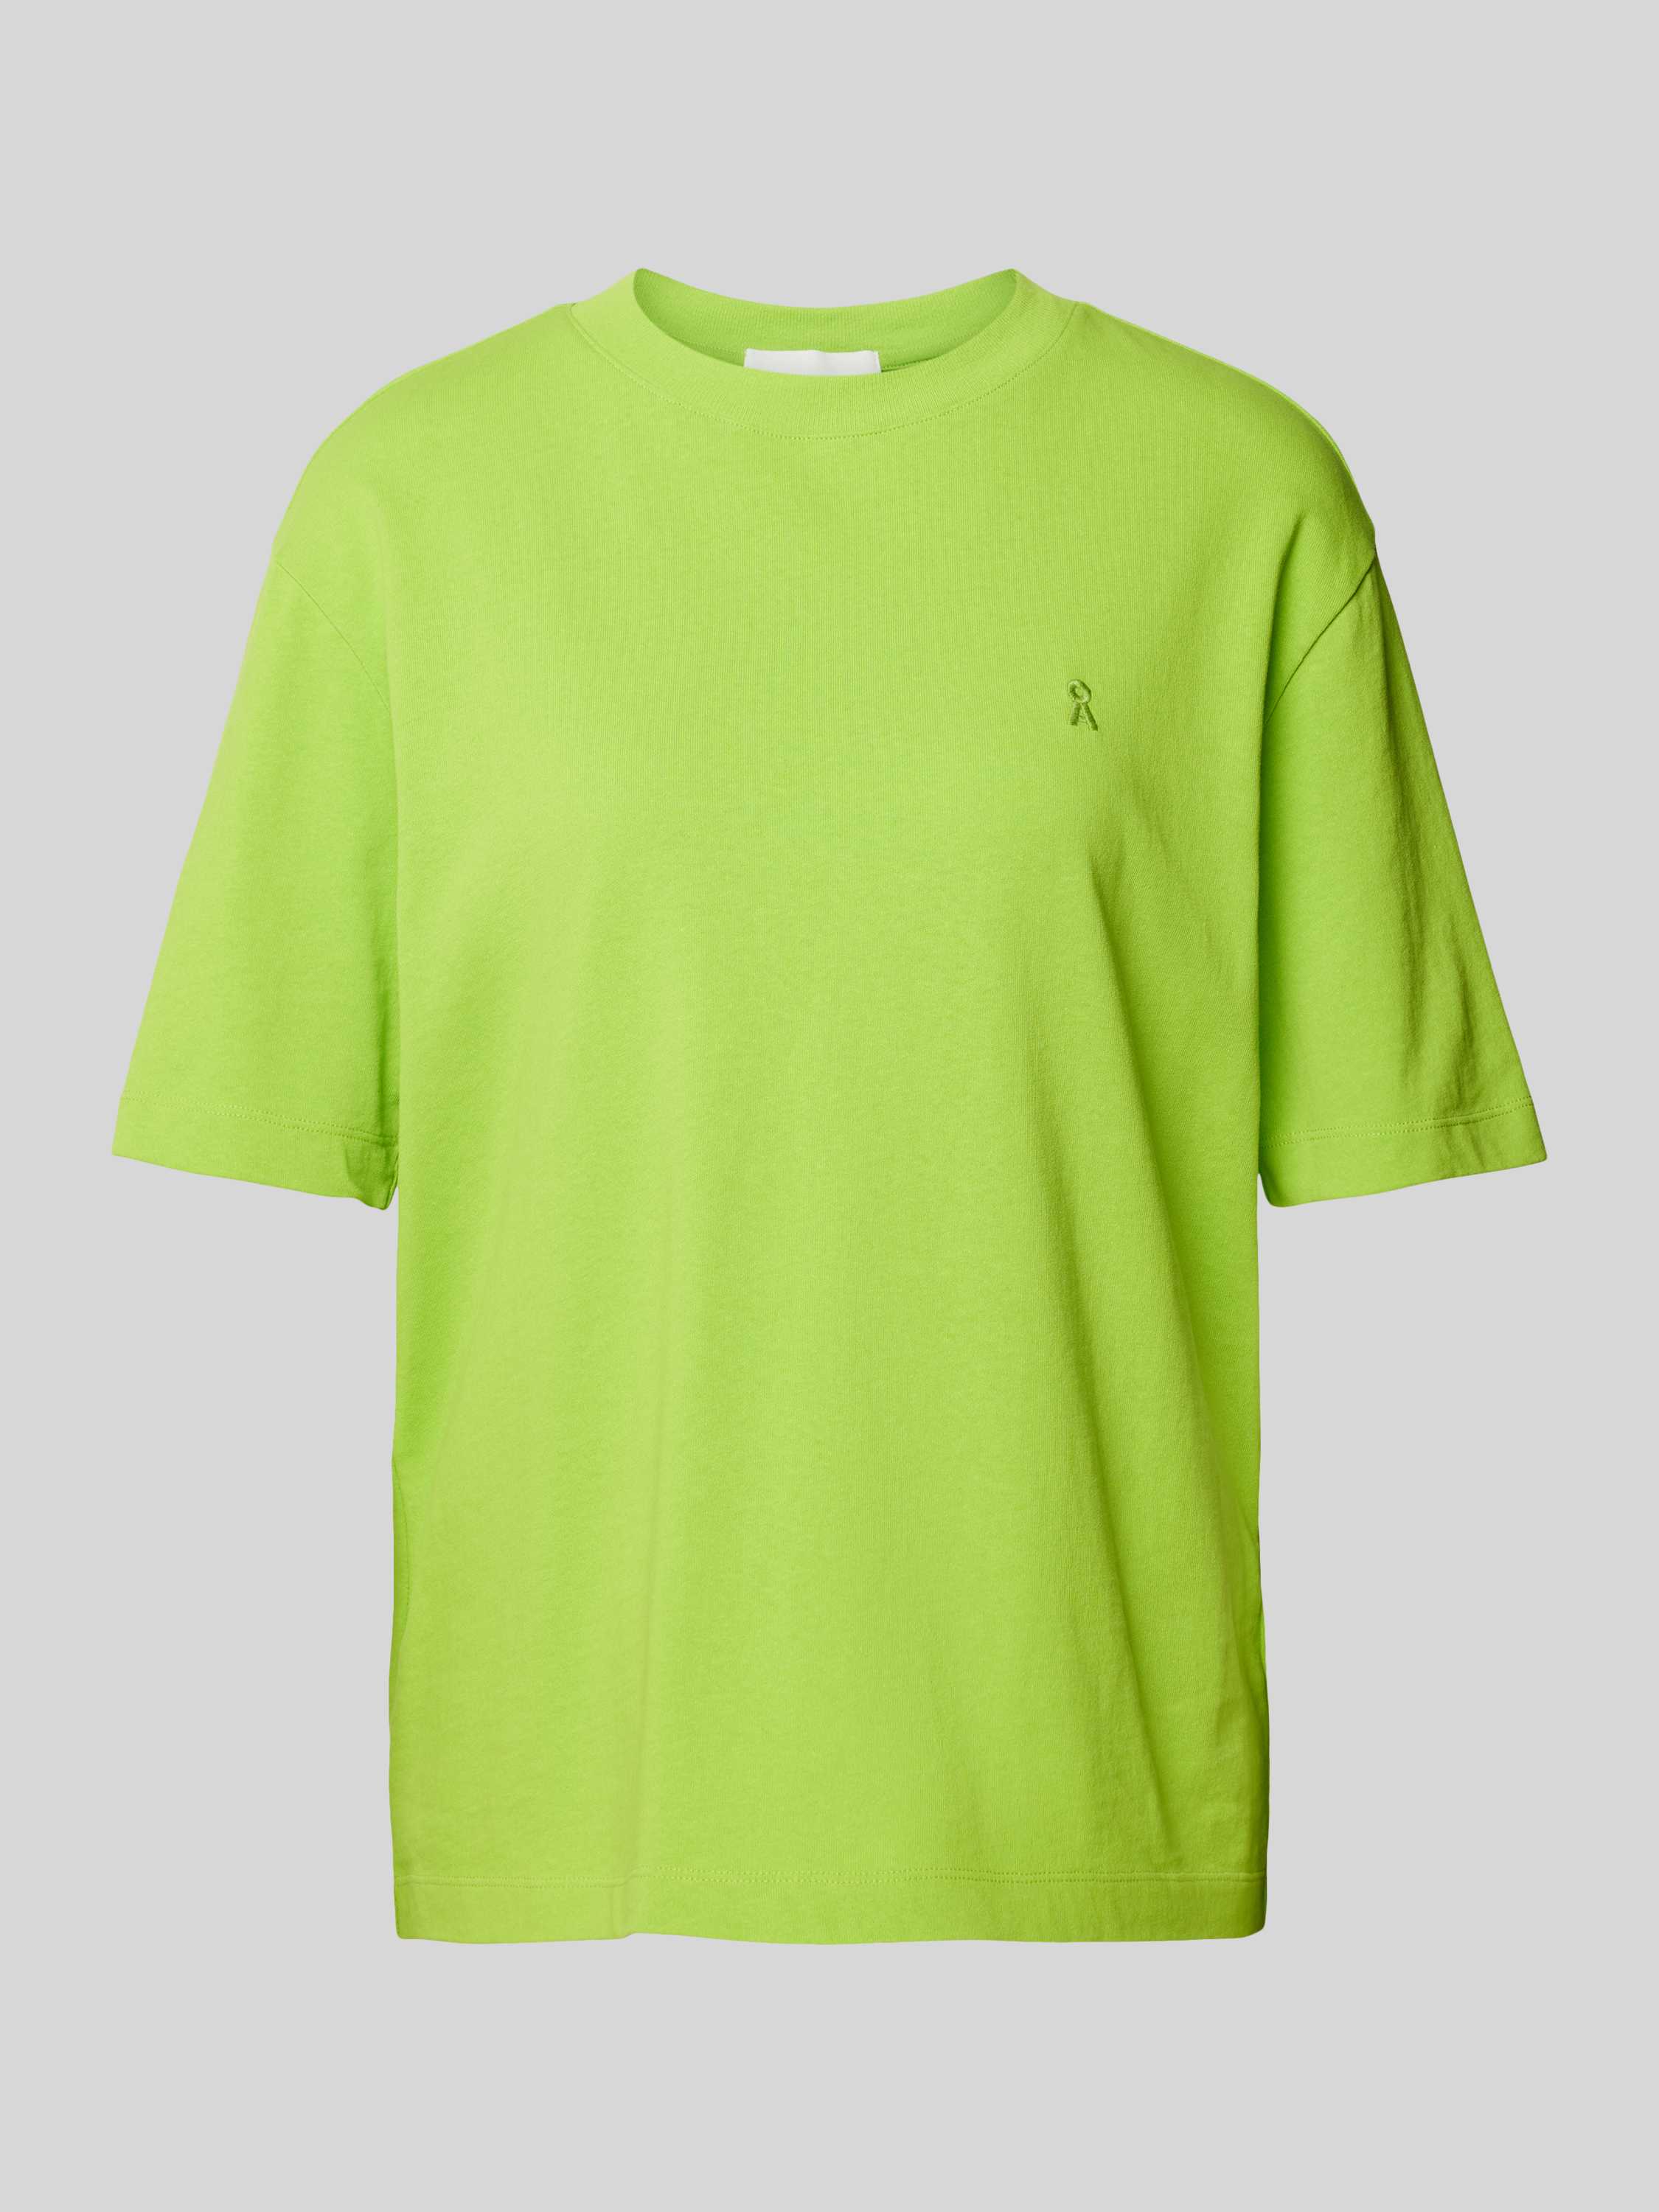 T-Shirt mit Label-Stitching Modell 'TARJAA'